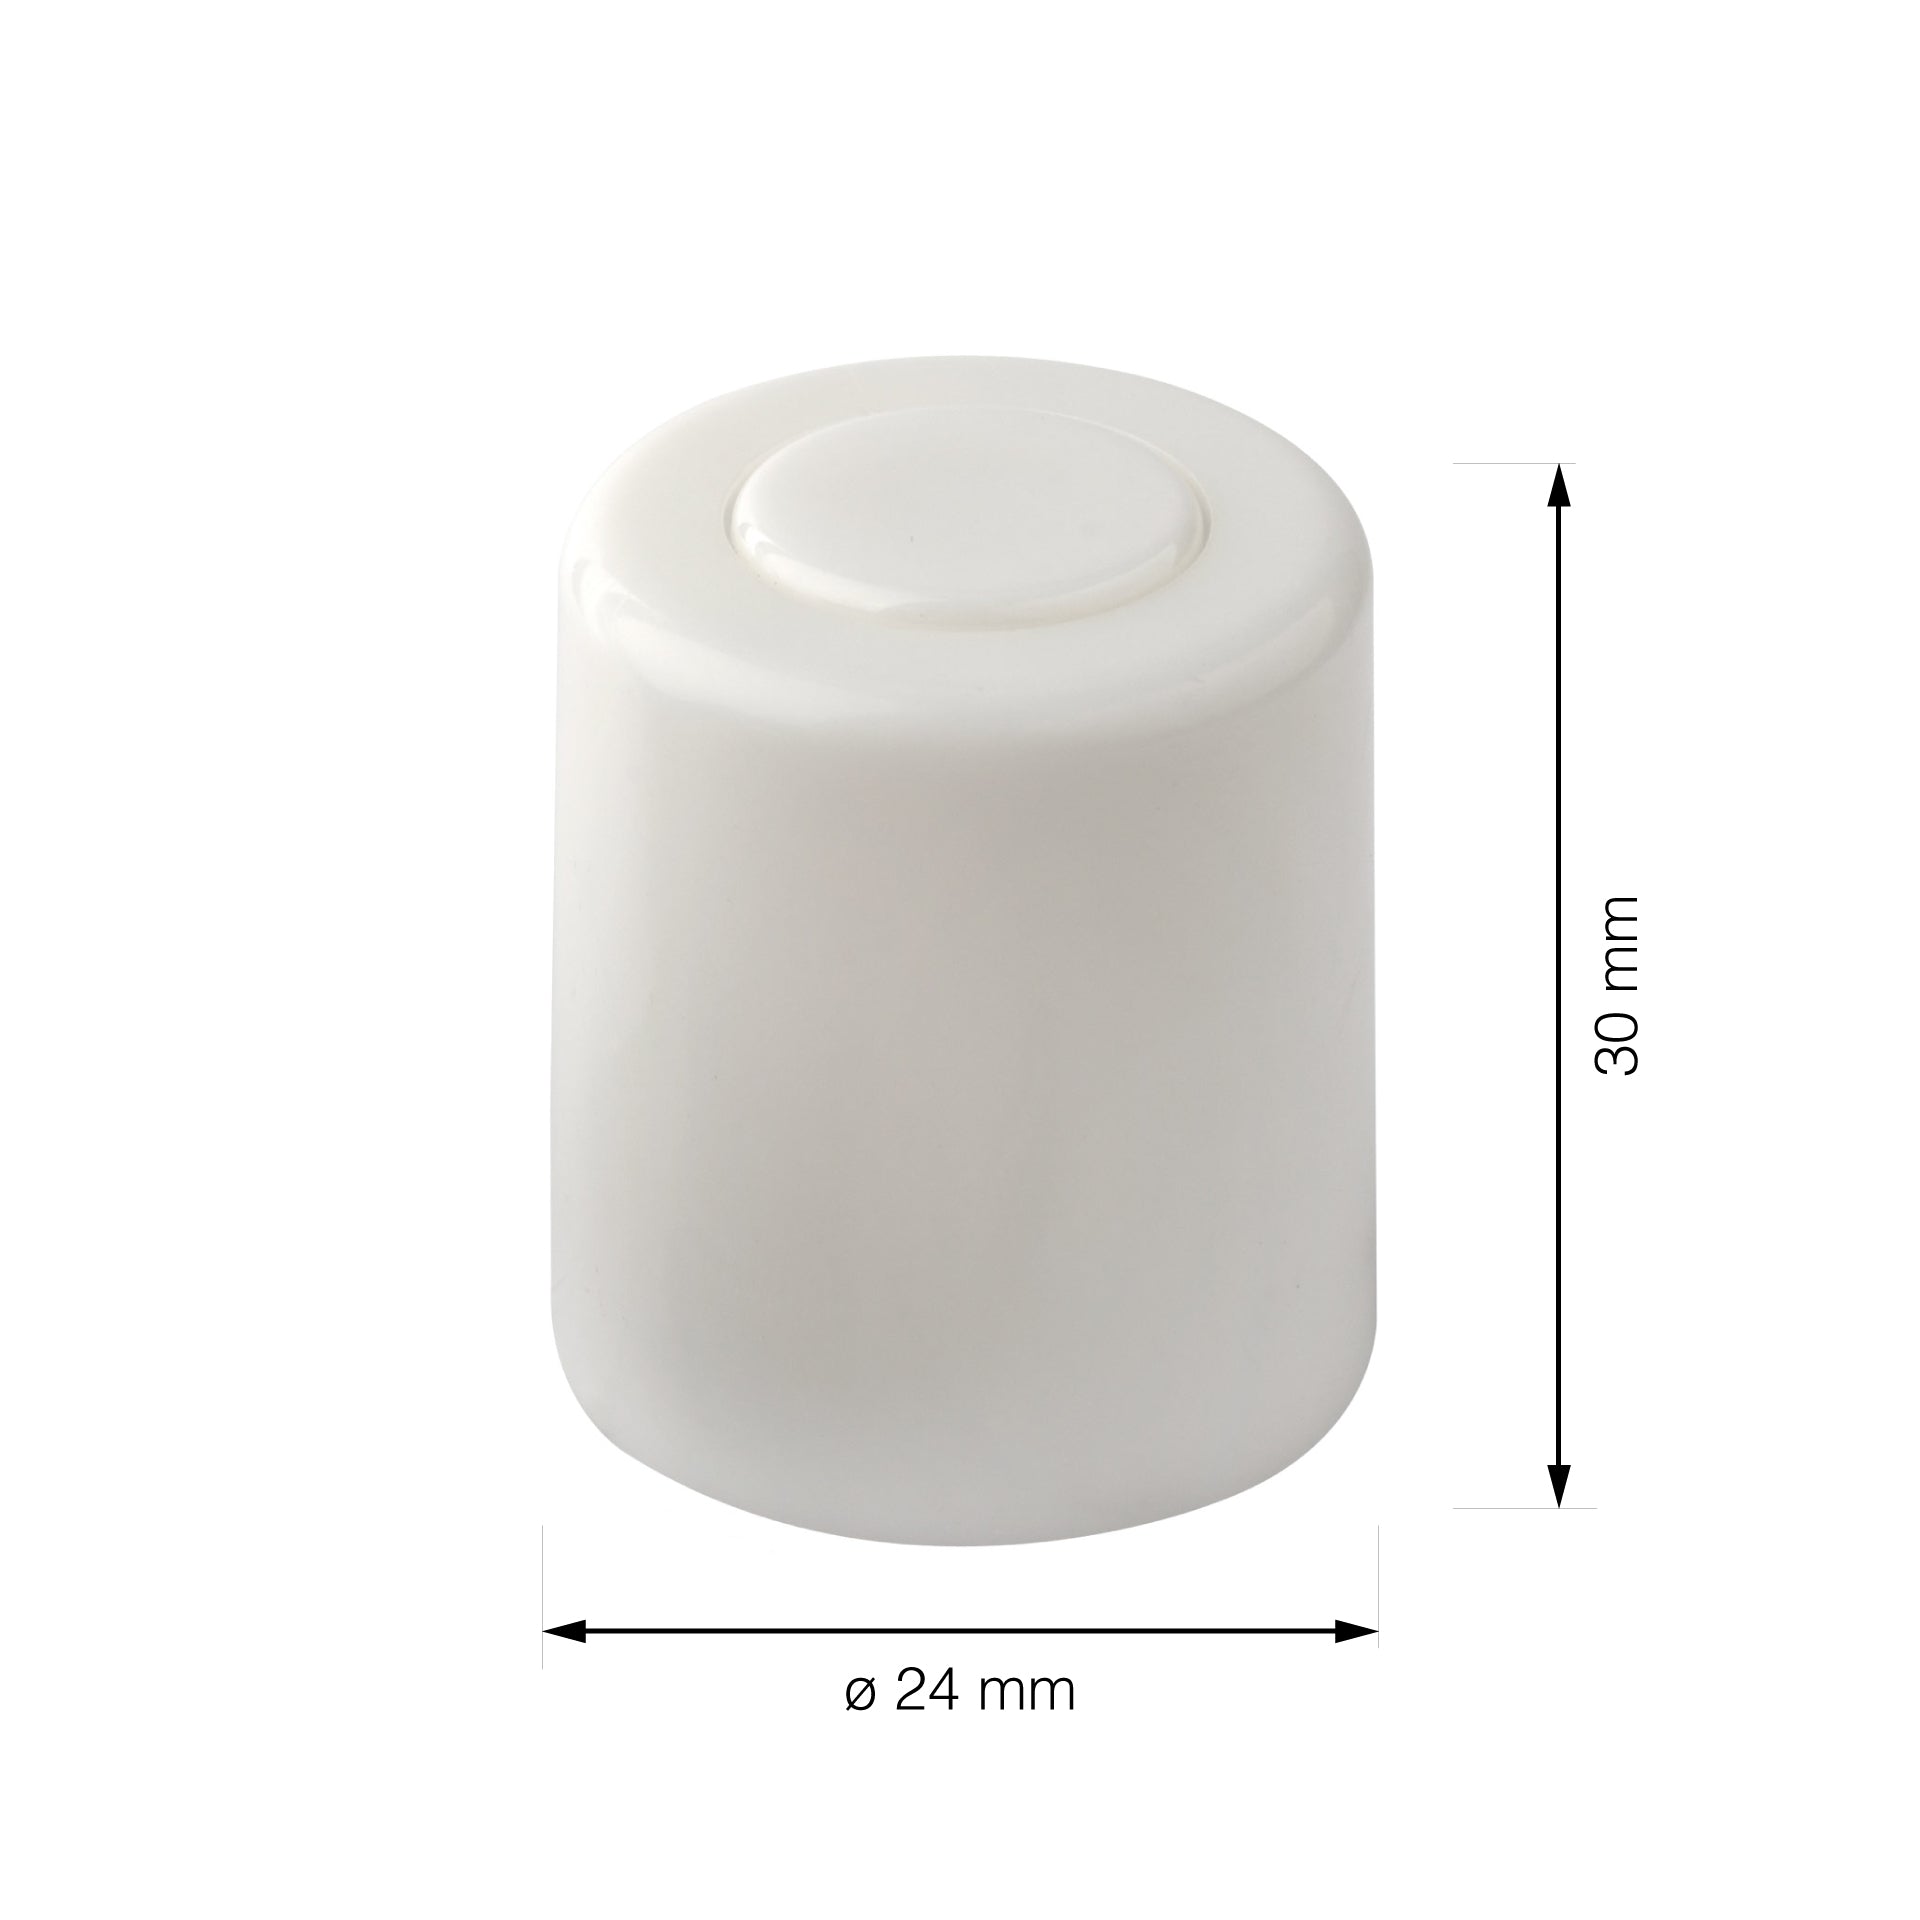 Produktmaße weißer Türstopper Boden zum Schrauben 24x30 mm